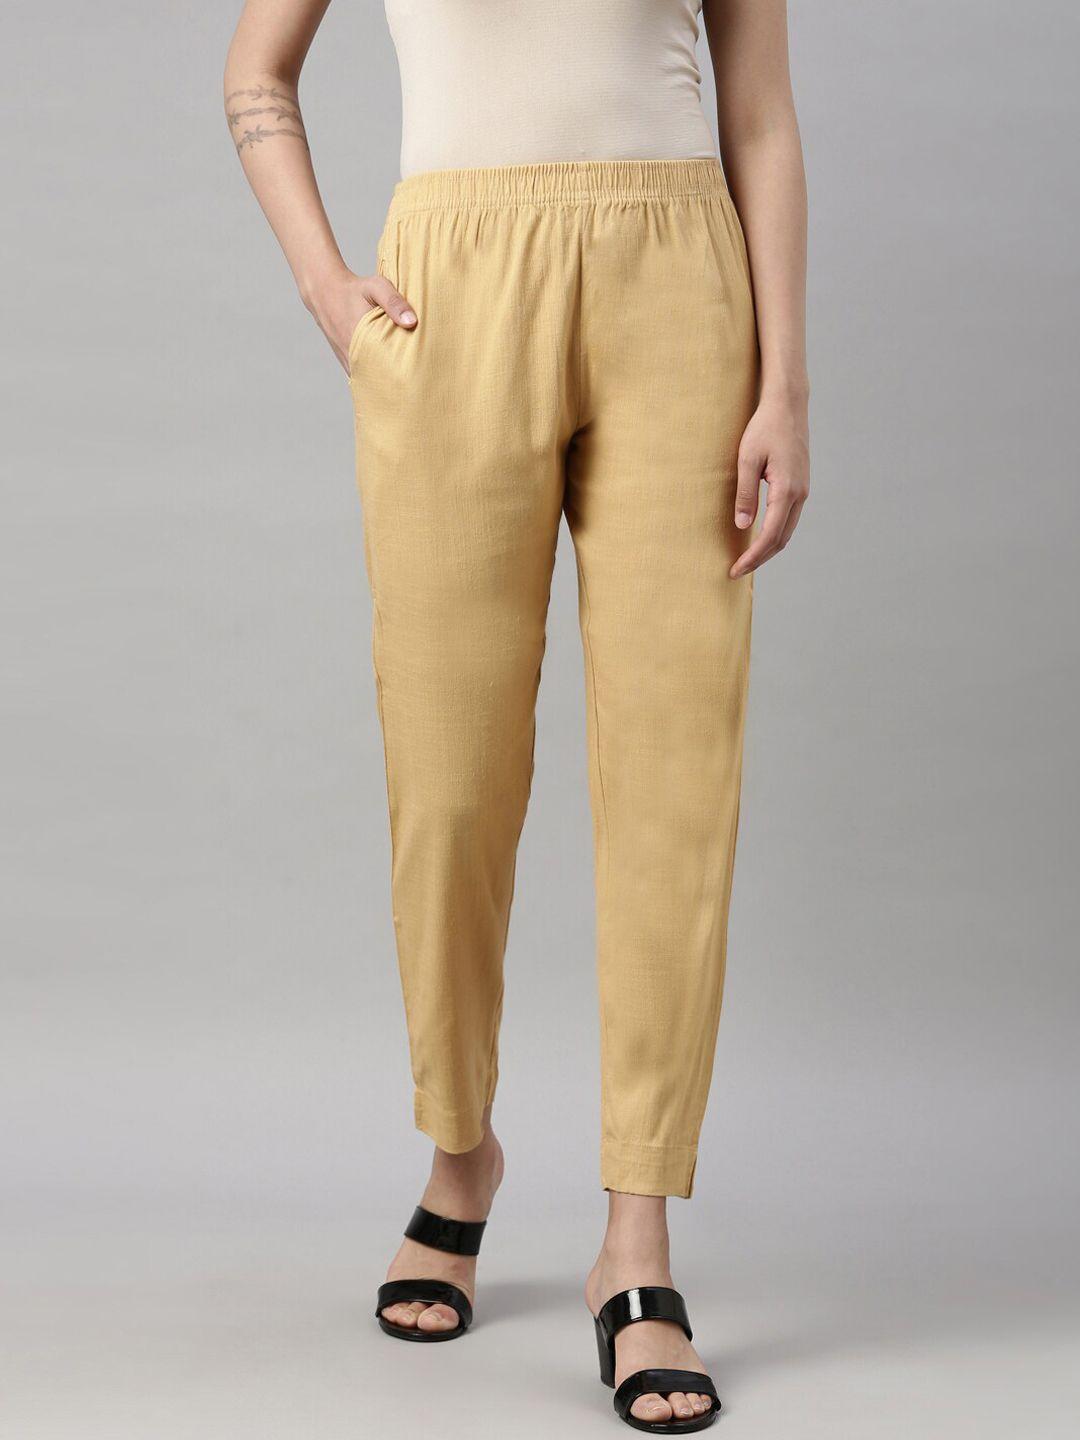 goldstroms women beige cotton trousers